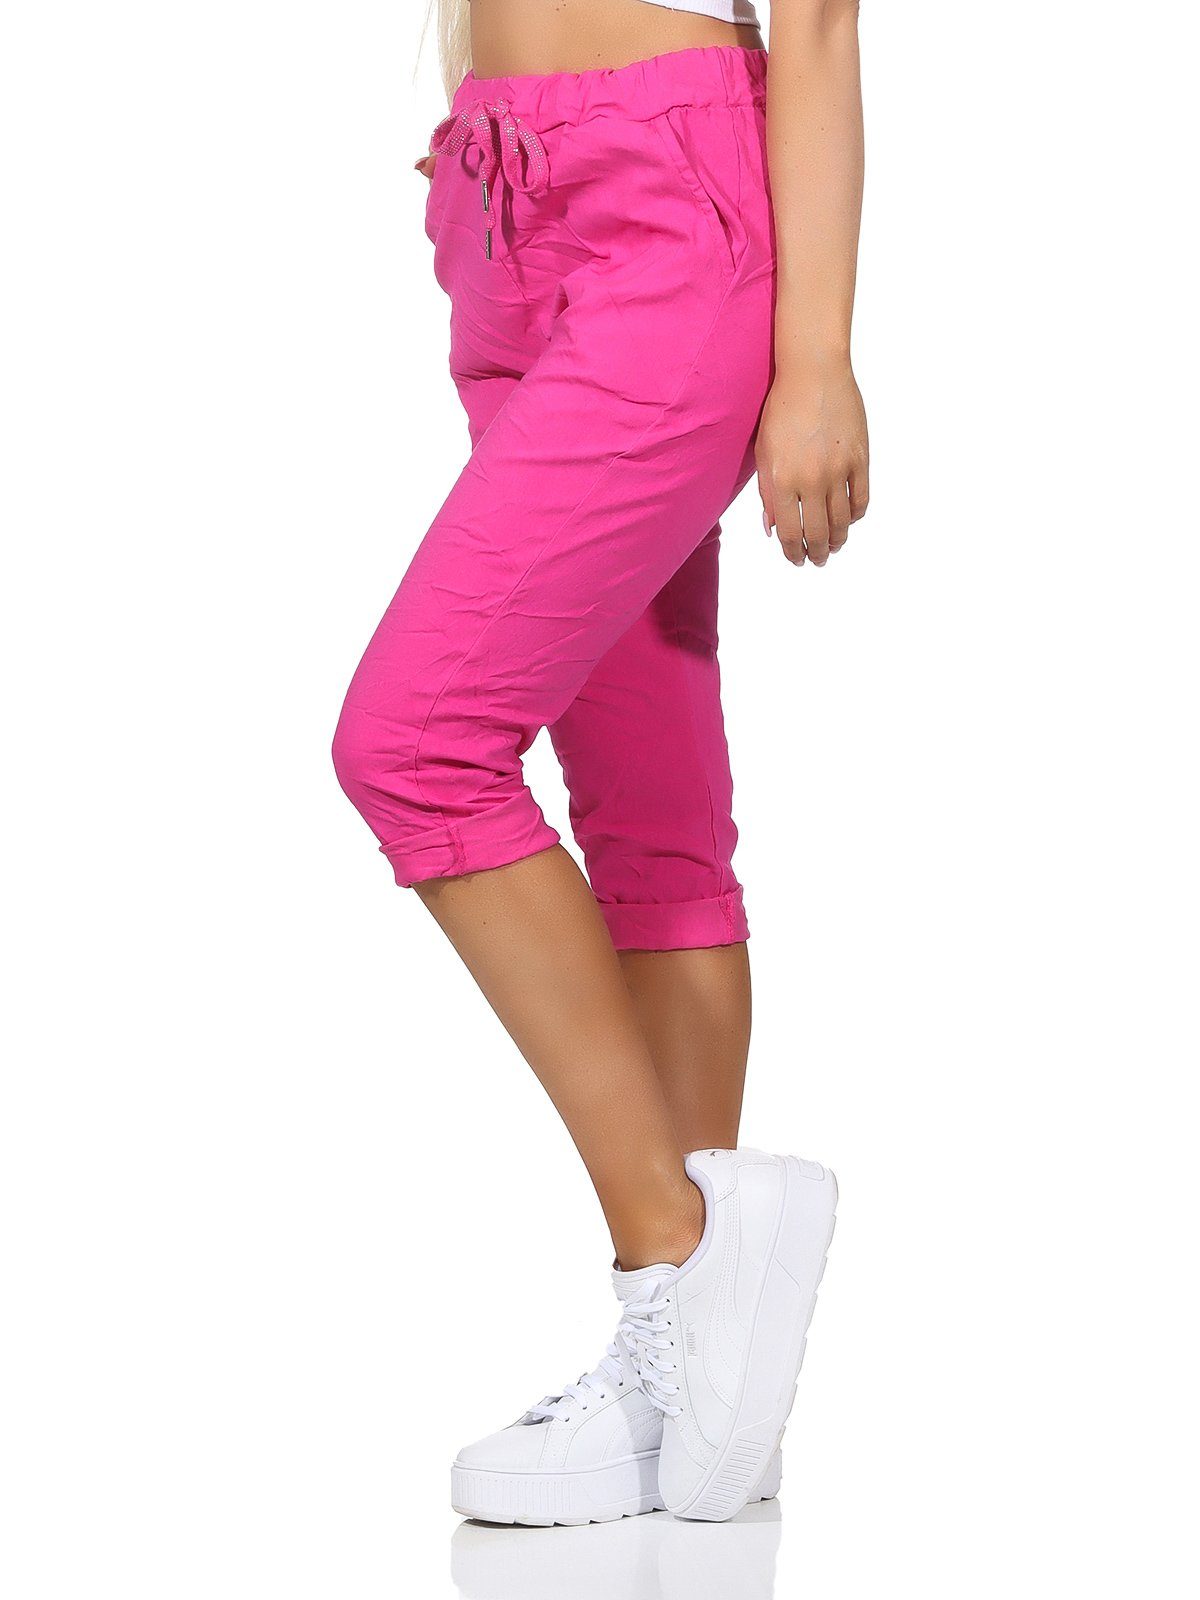 Aurela Damenmode 7/8-Hose Damen Sommerhose Capri Kurze sommerlichen und Bermuda in Farben, Kordelzug, Taschen 36-44 Jeans Pink Hose